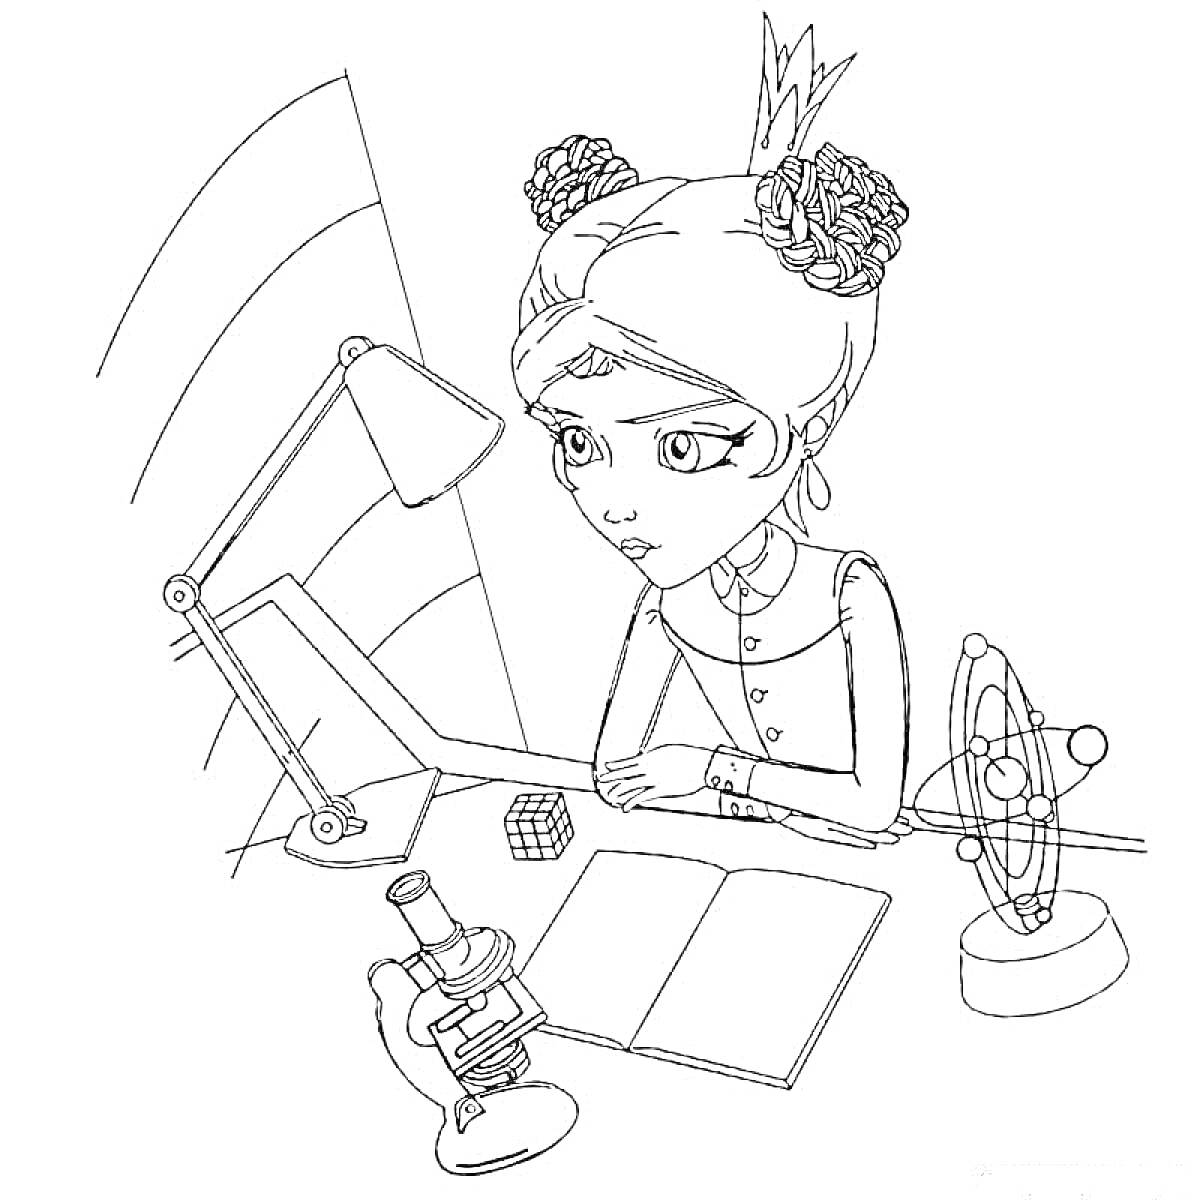 Принцесса с короной и цветами в волосах изучает микроскоп, книгу и кубик Рубика на рабочем месте с настольной лампой и магическим устройством.